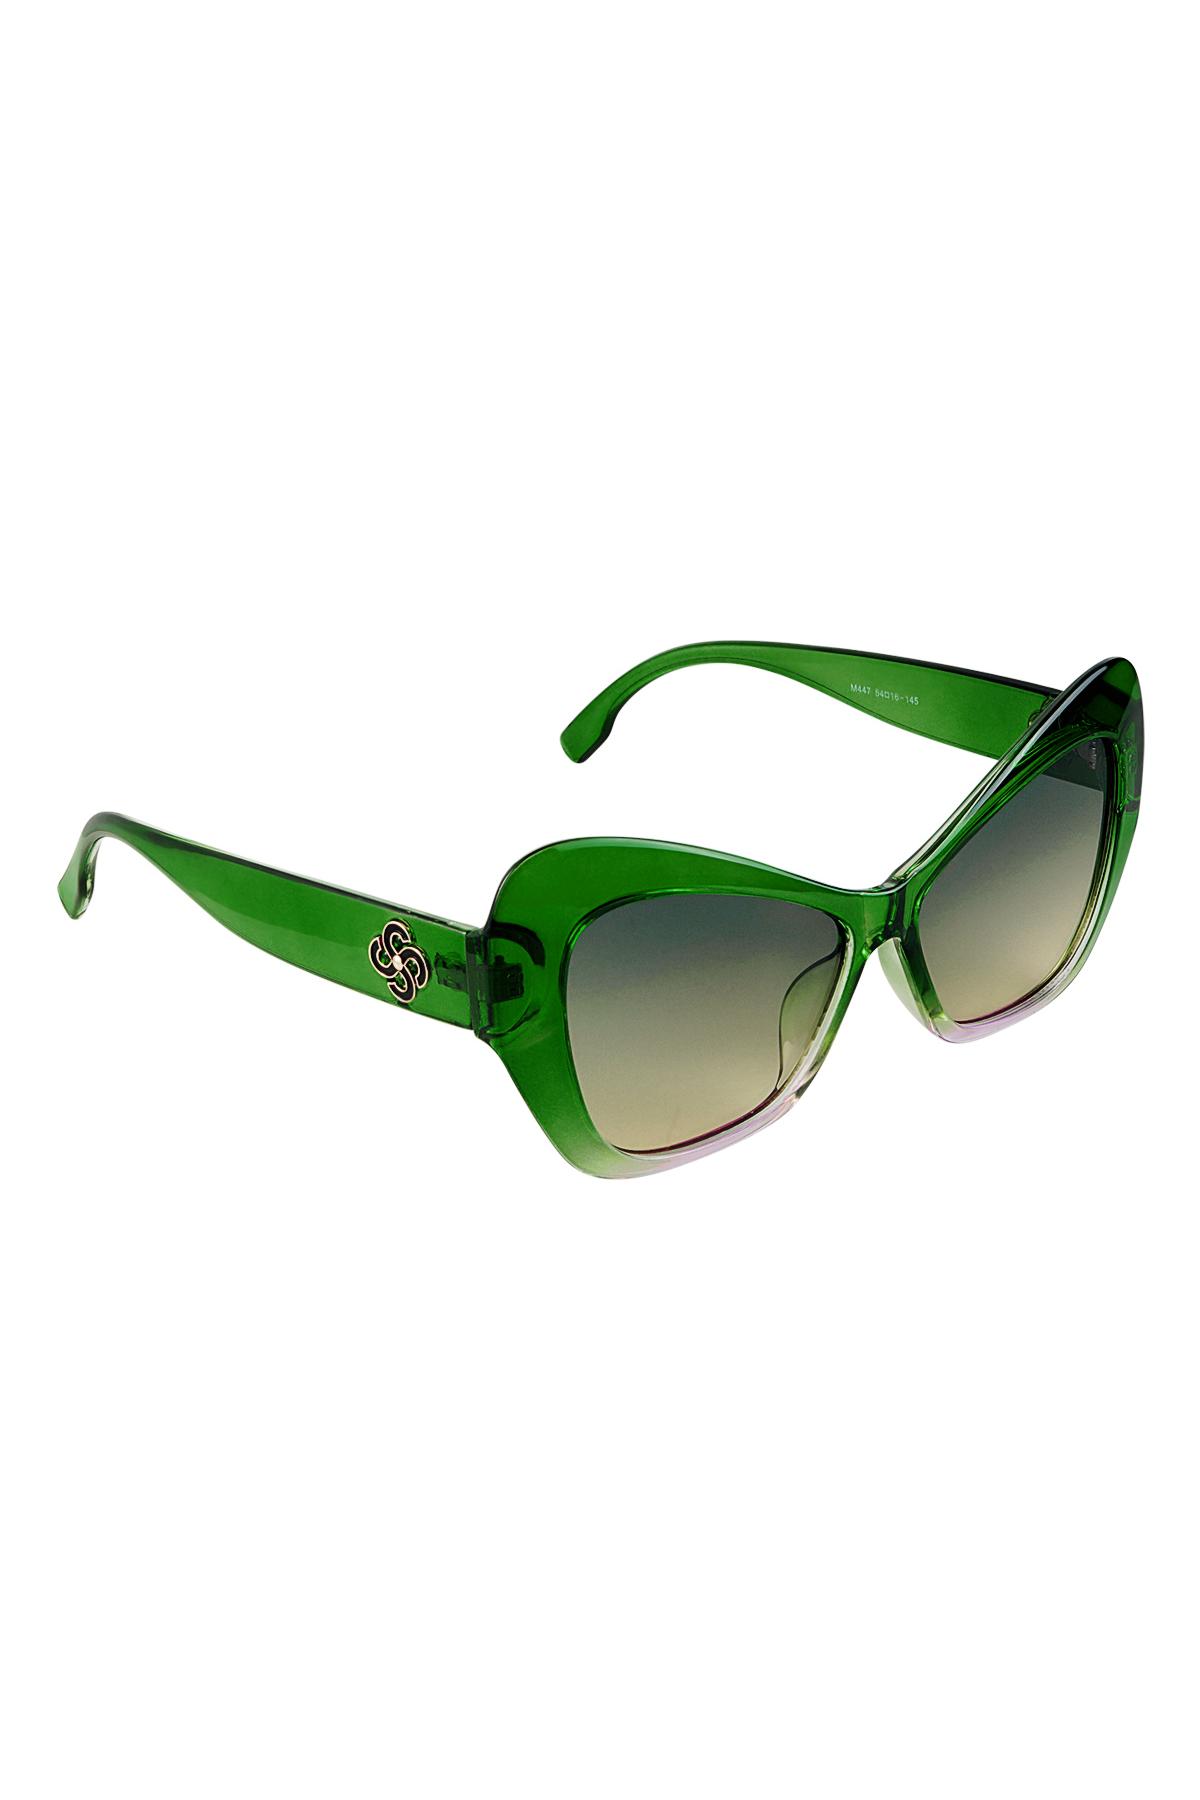 Güneş gözlüğü bildirimi Green PC One size h5 